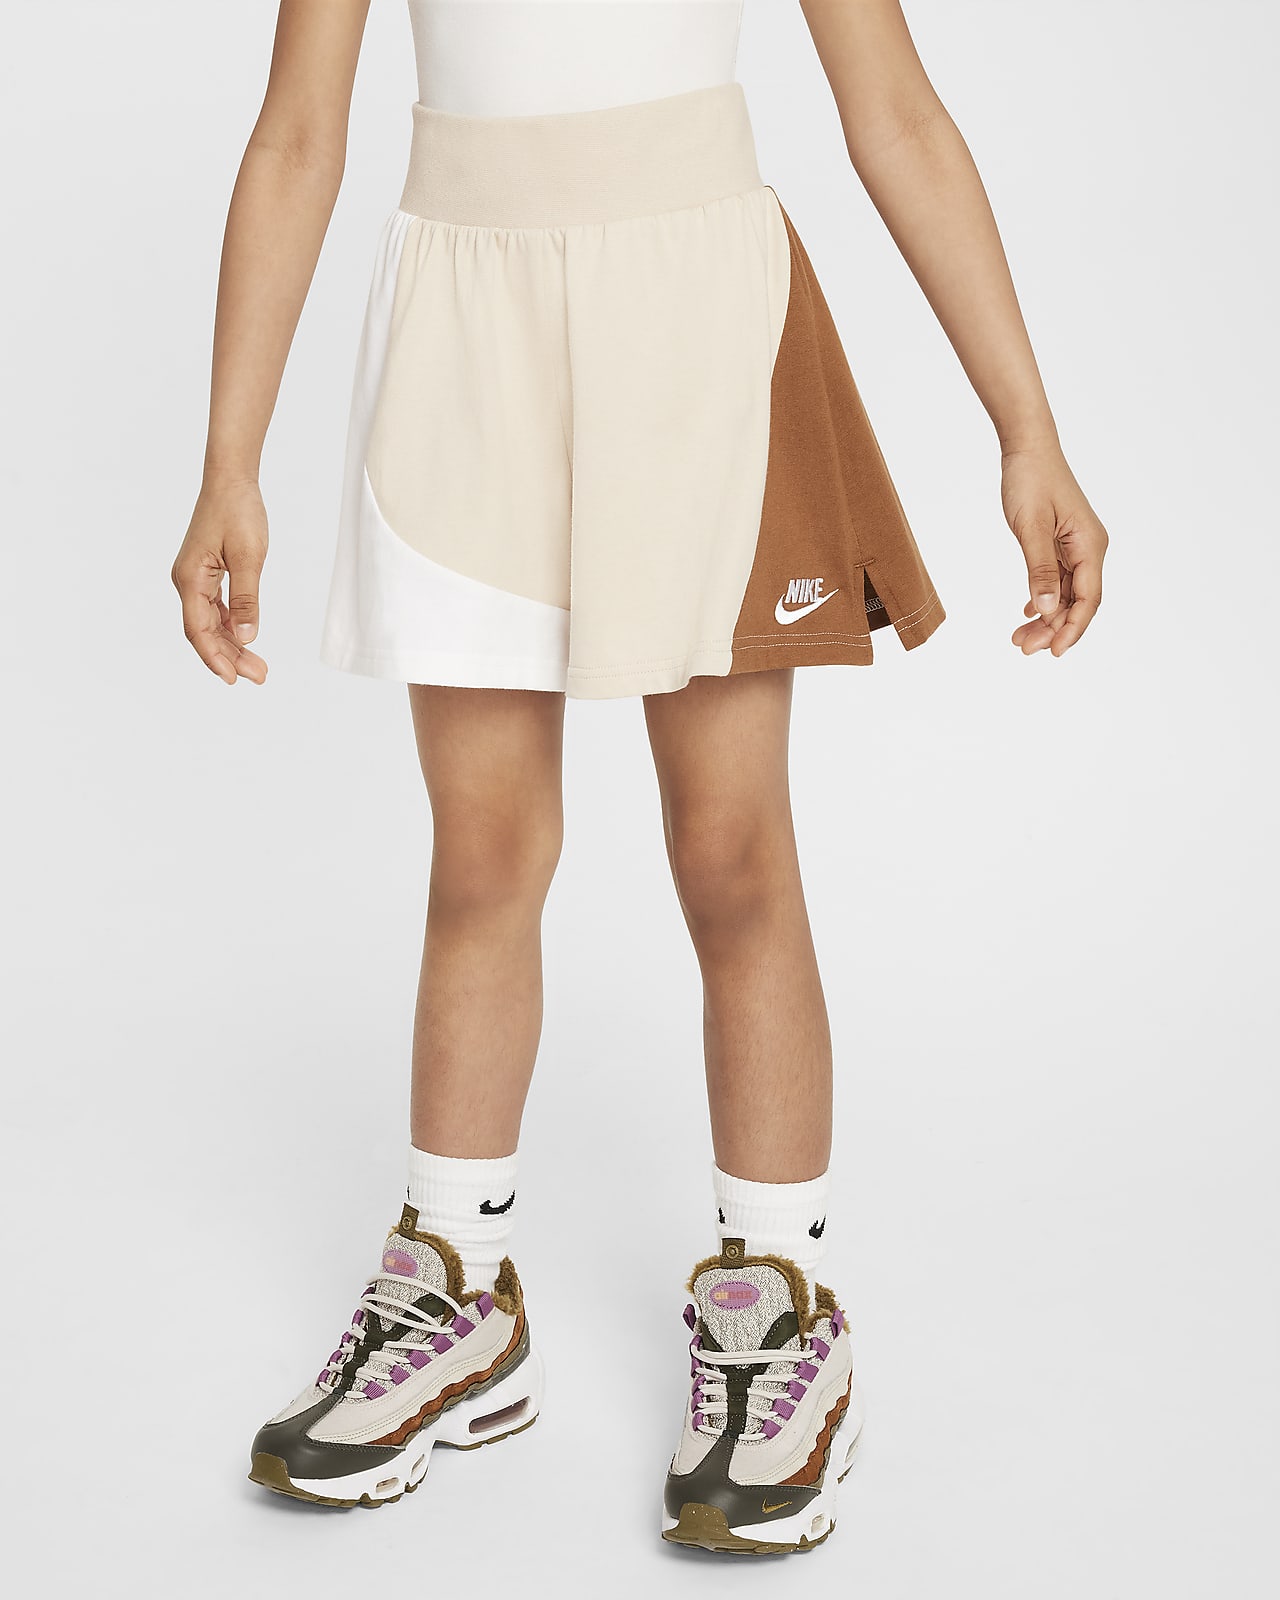 Nike Sportswear Jersey-Shorts für ältere Kinder (Mädchen)